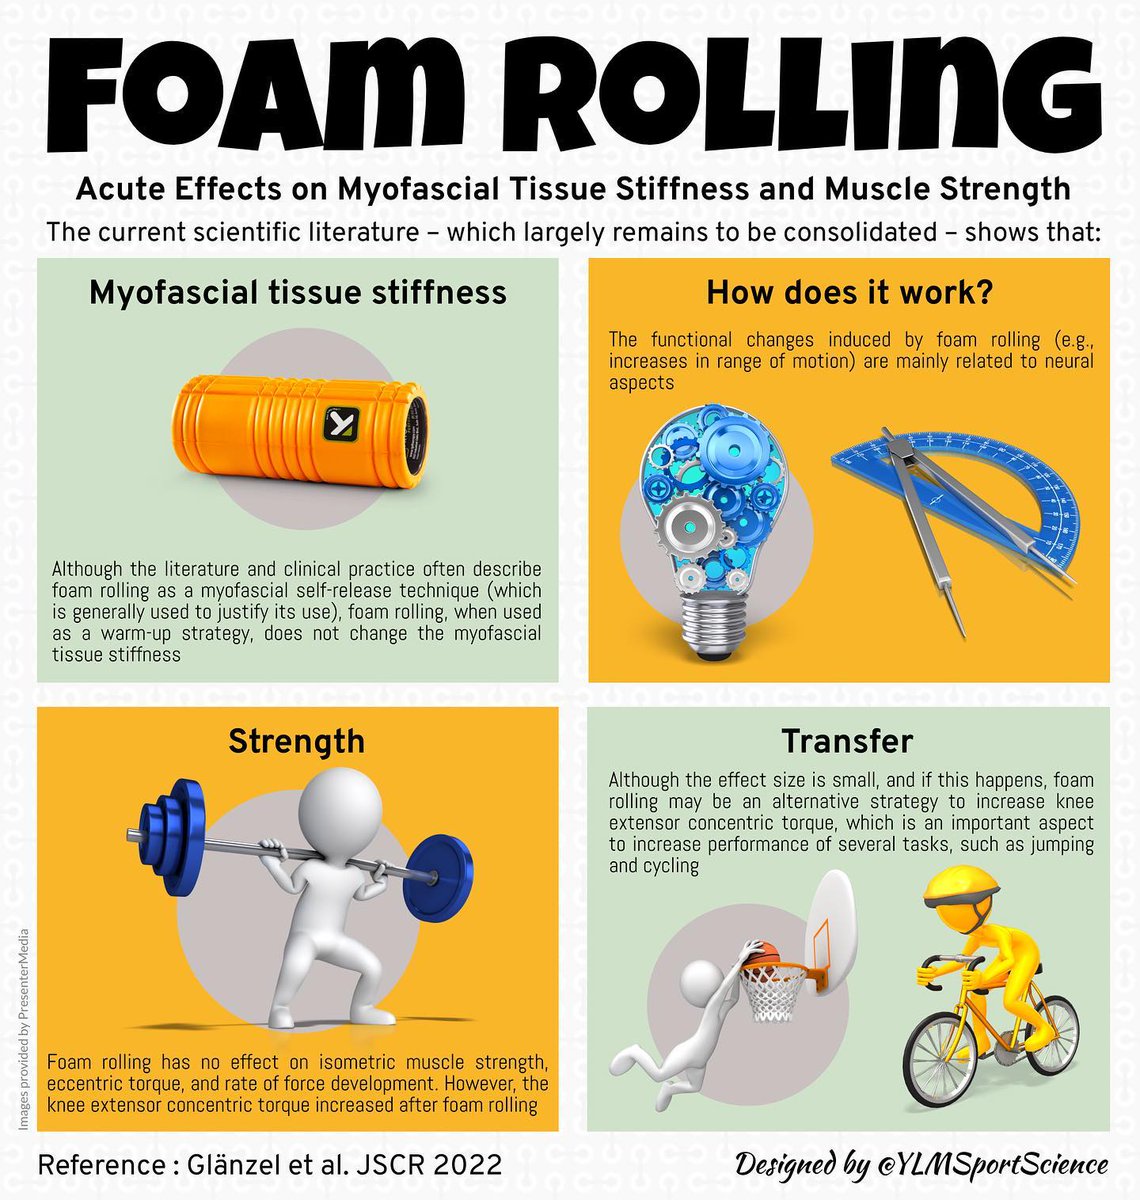 #FoamRolling 
#MuscleStiffness 
#MuscleStrength